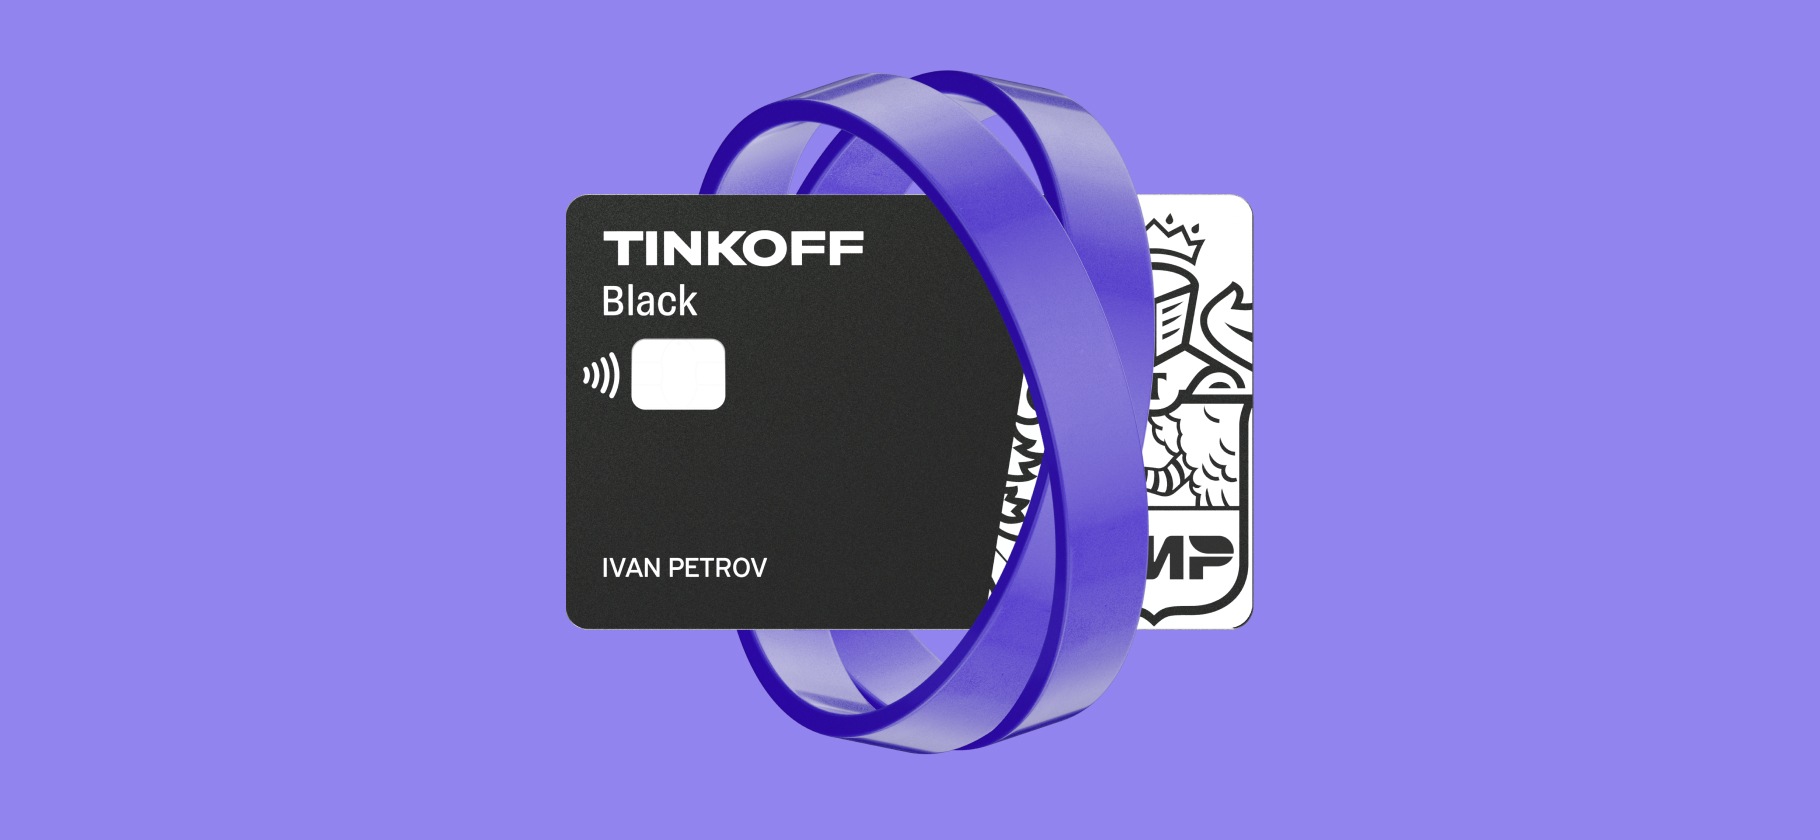 Легкий способ экономить: 4 возможности Tinkoff Black, чтобы держать себя в руках